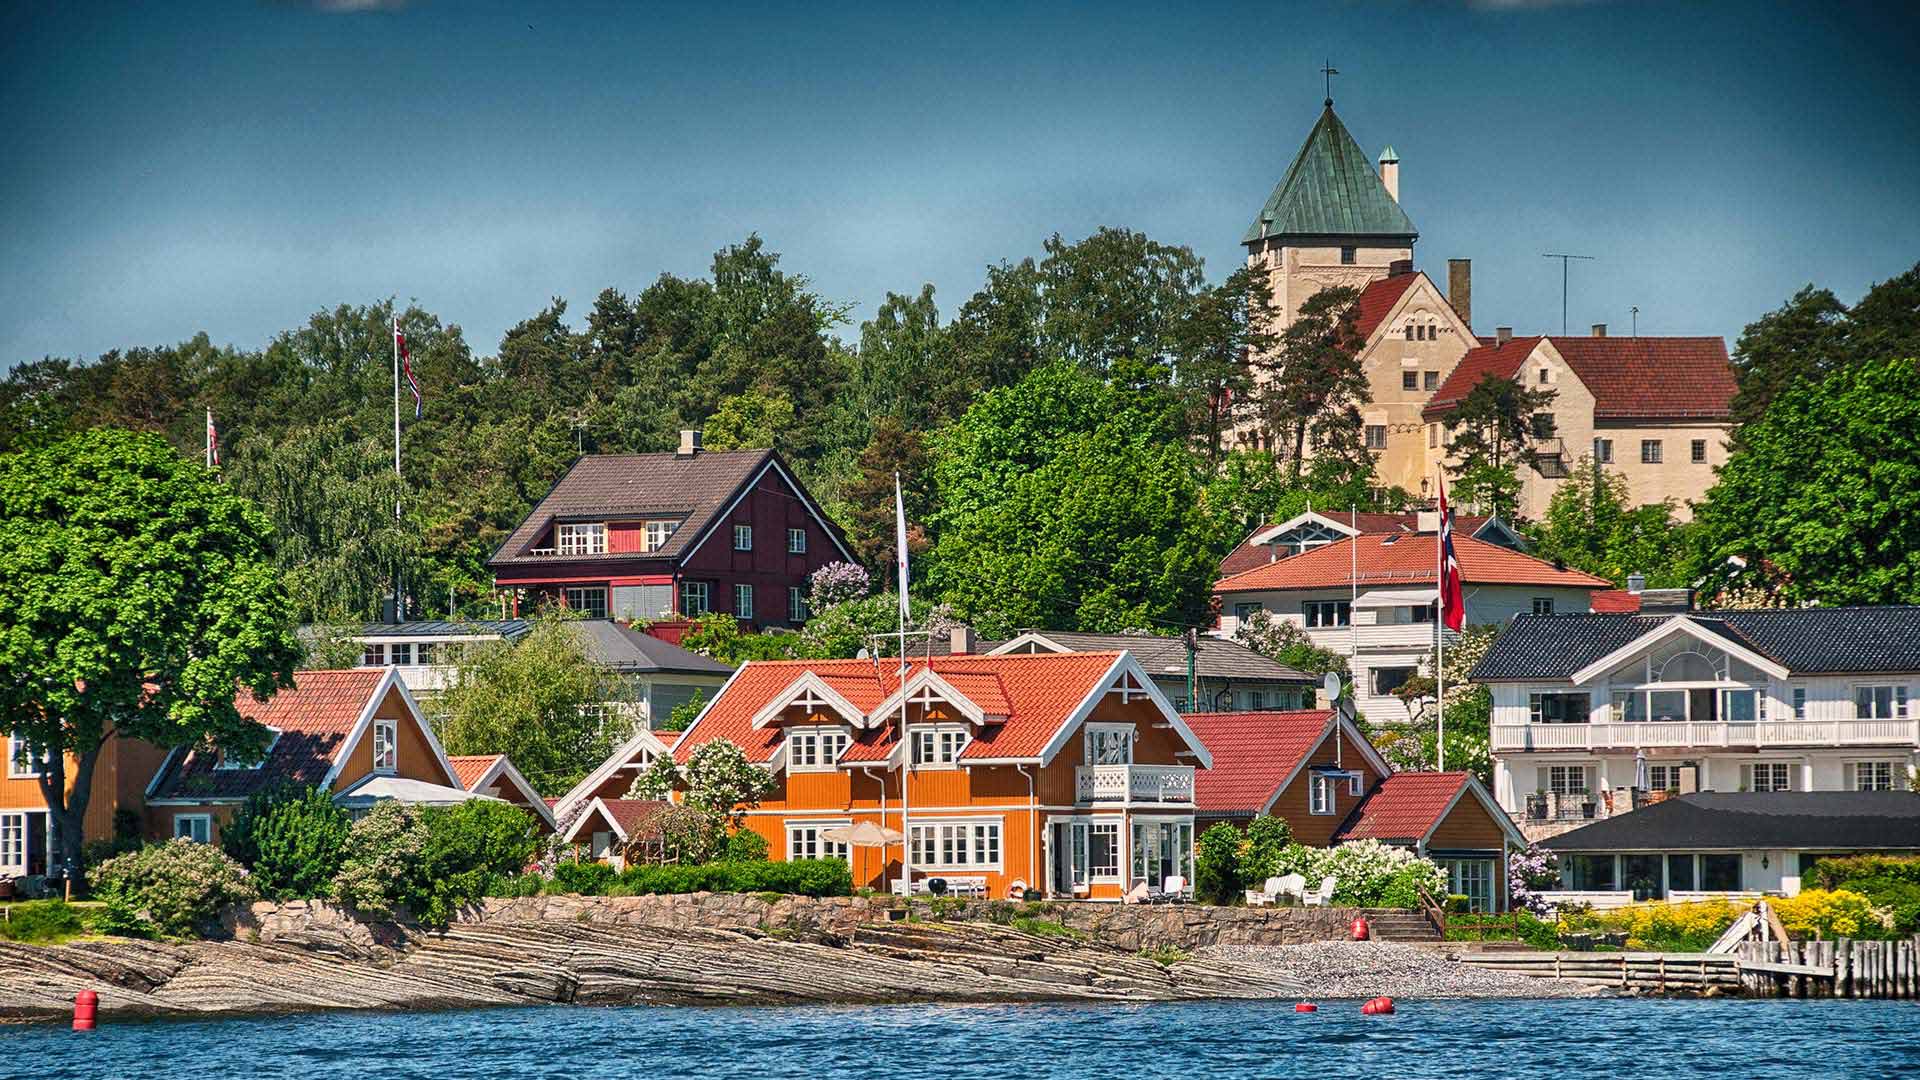 Houses outside of Oslo